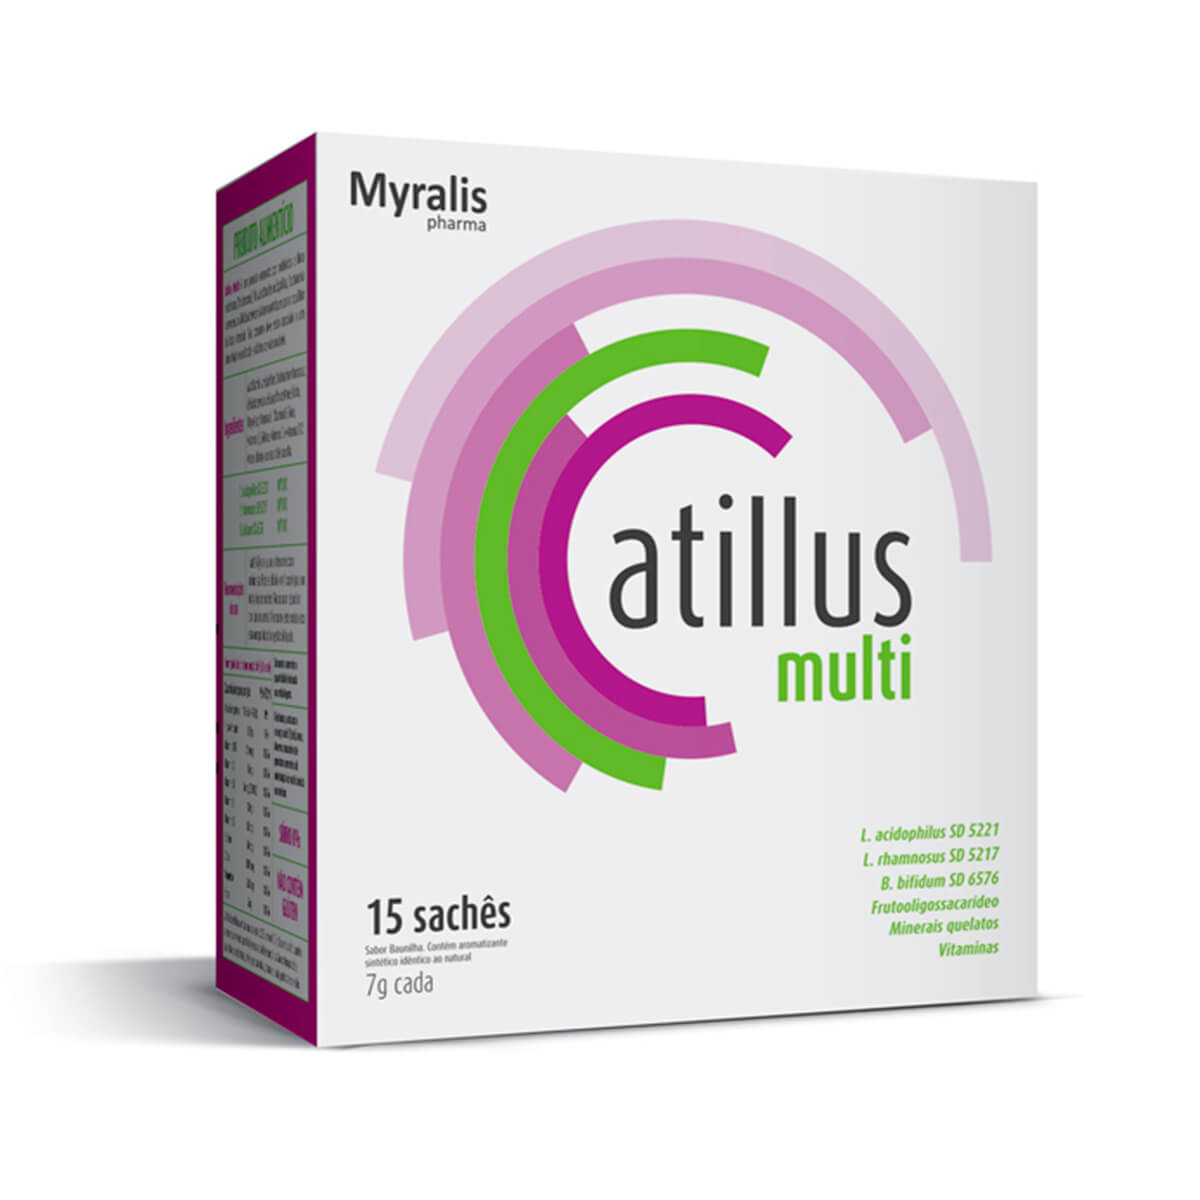 Atillus Multi com 15 sachês de 7g